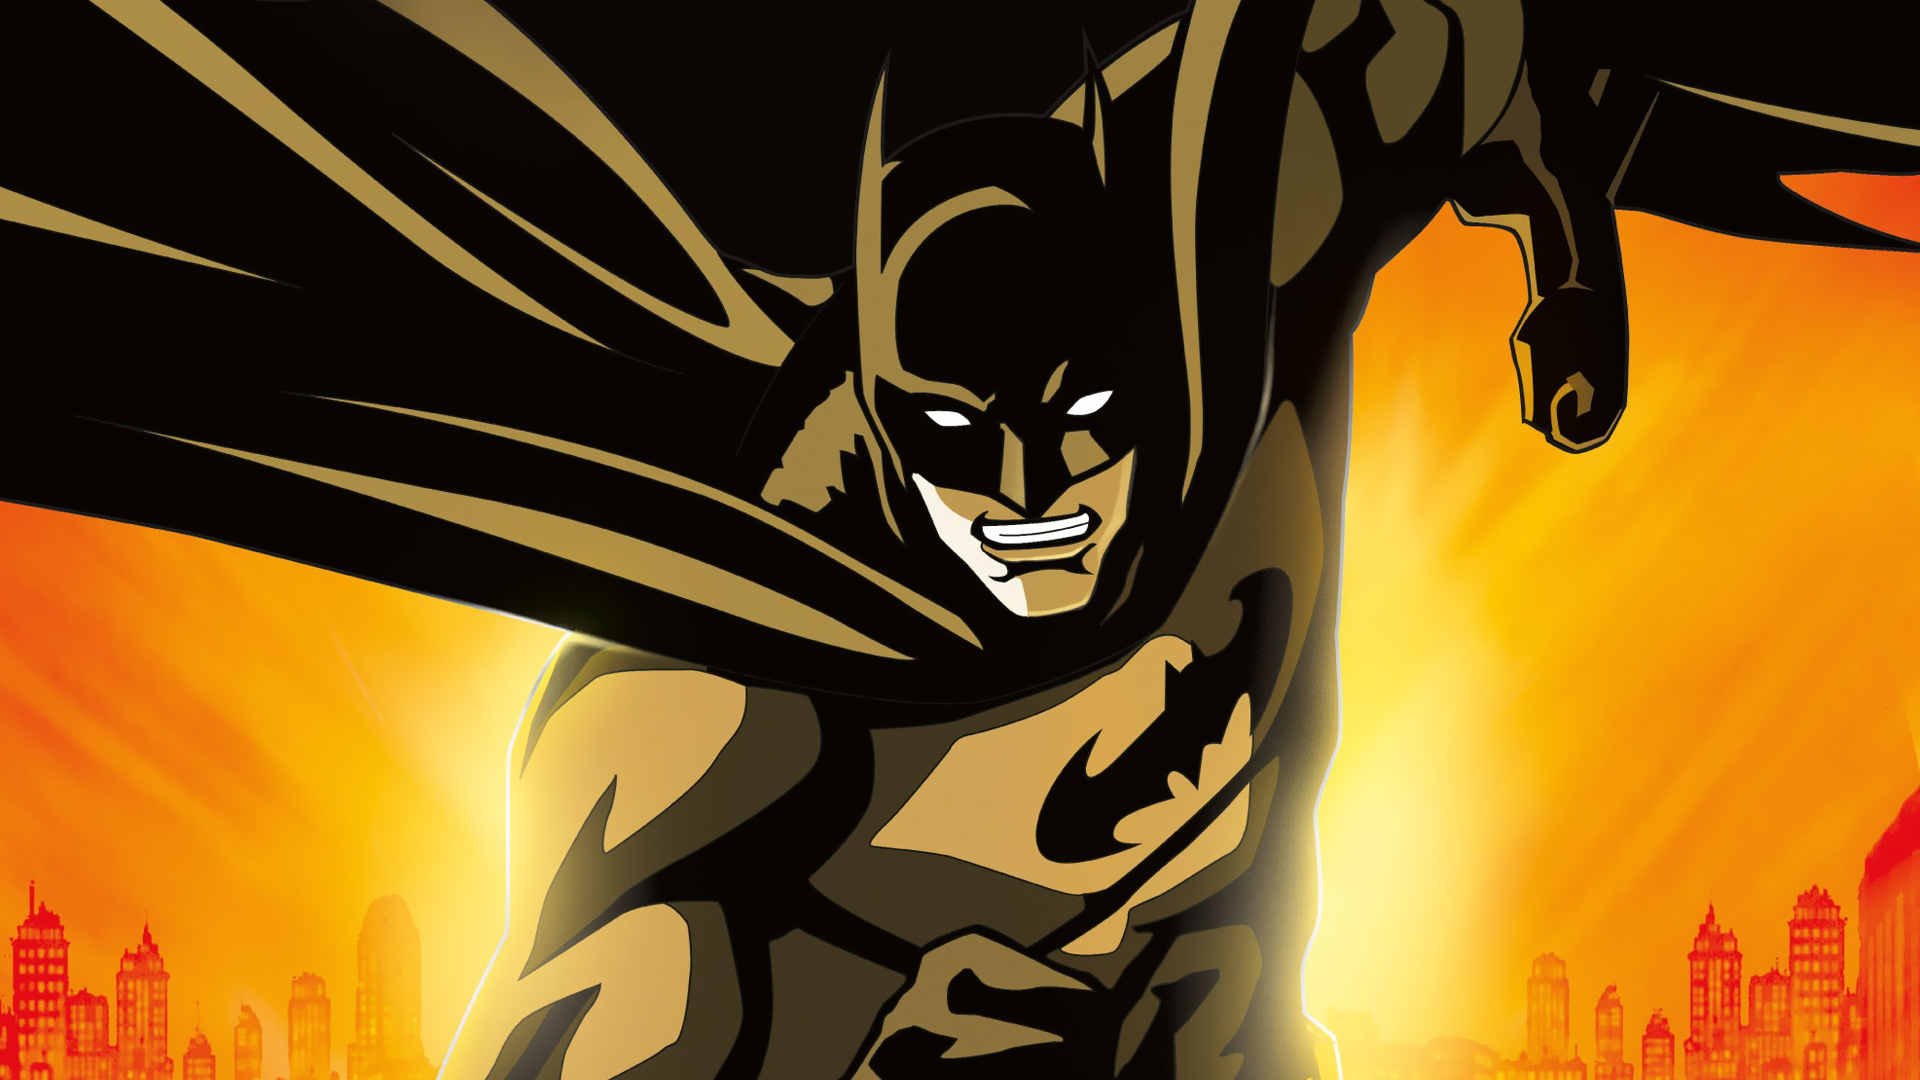 Скачать обои Бэтмен: Рыцарь Готэма на телефон бесплатно